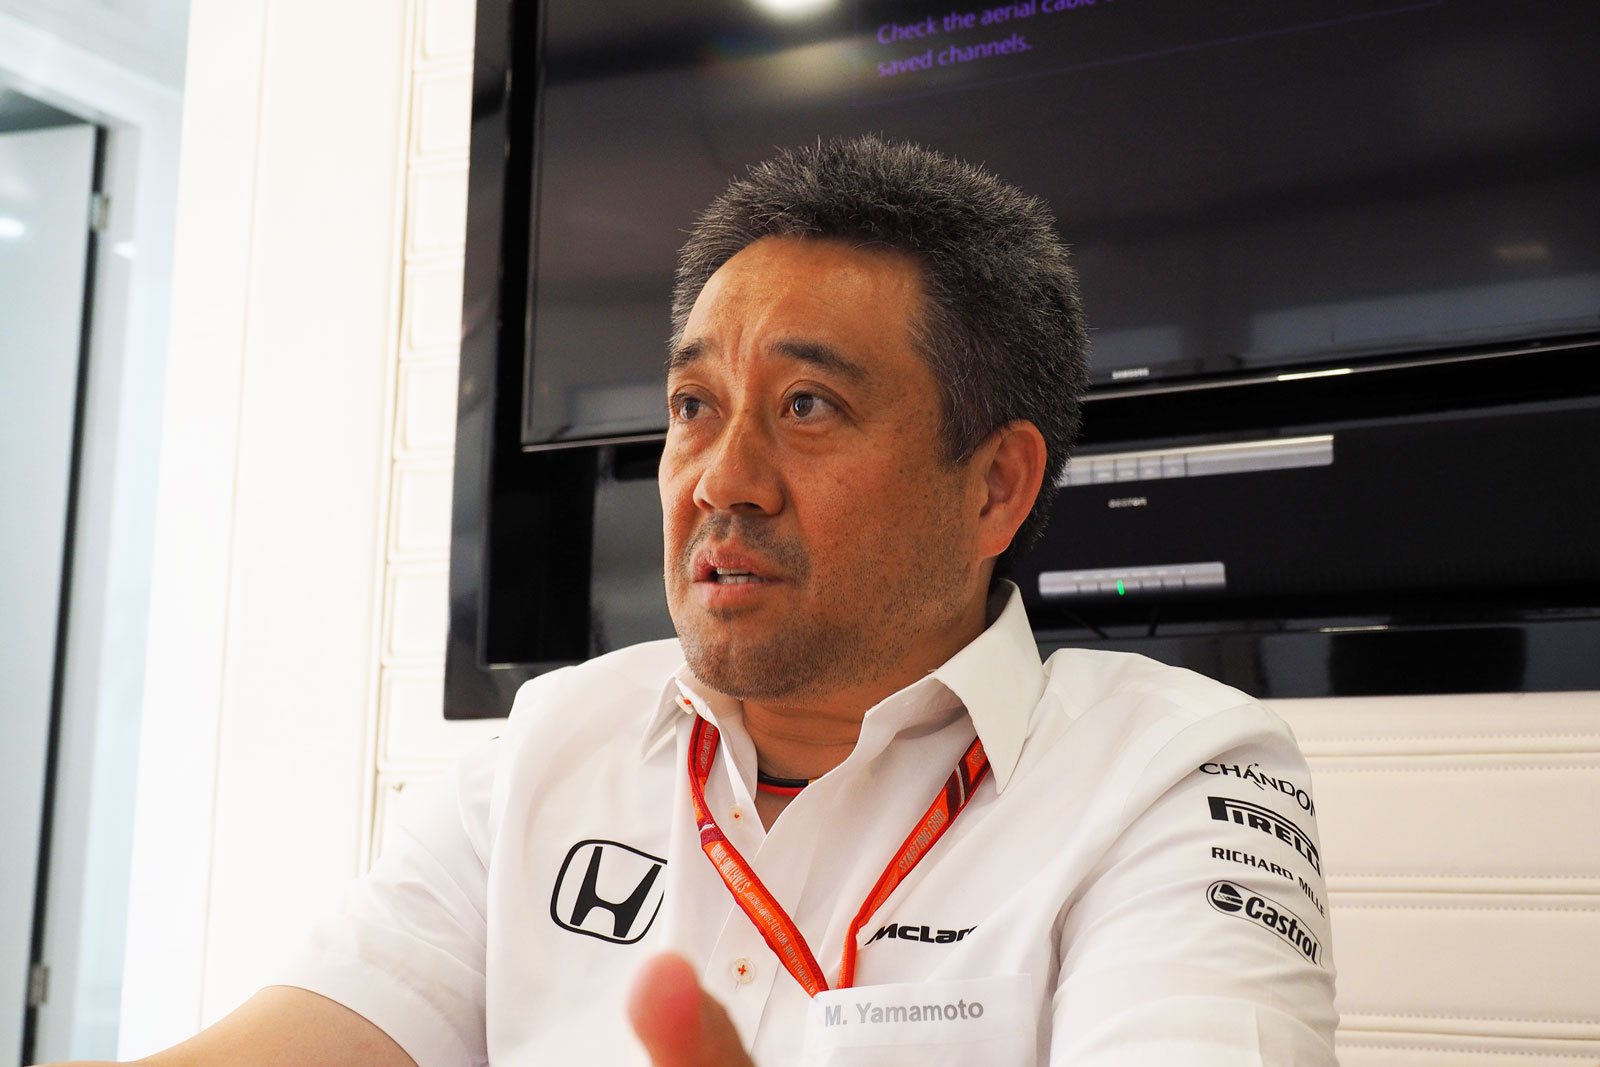 【特別インタビュー】ホンダ山本雅史MS部長「F1活動継続のために最大限の努力。ウイン-ウインの関係を目指す」